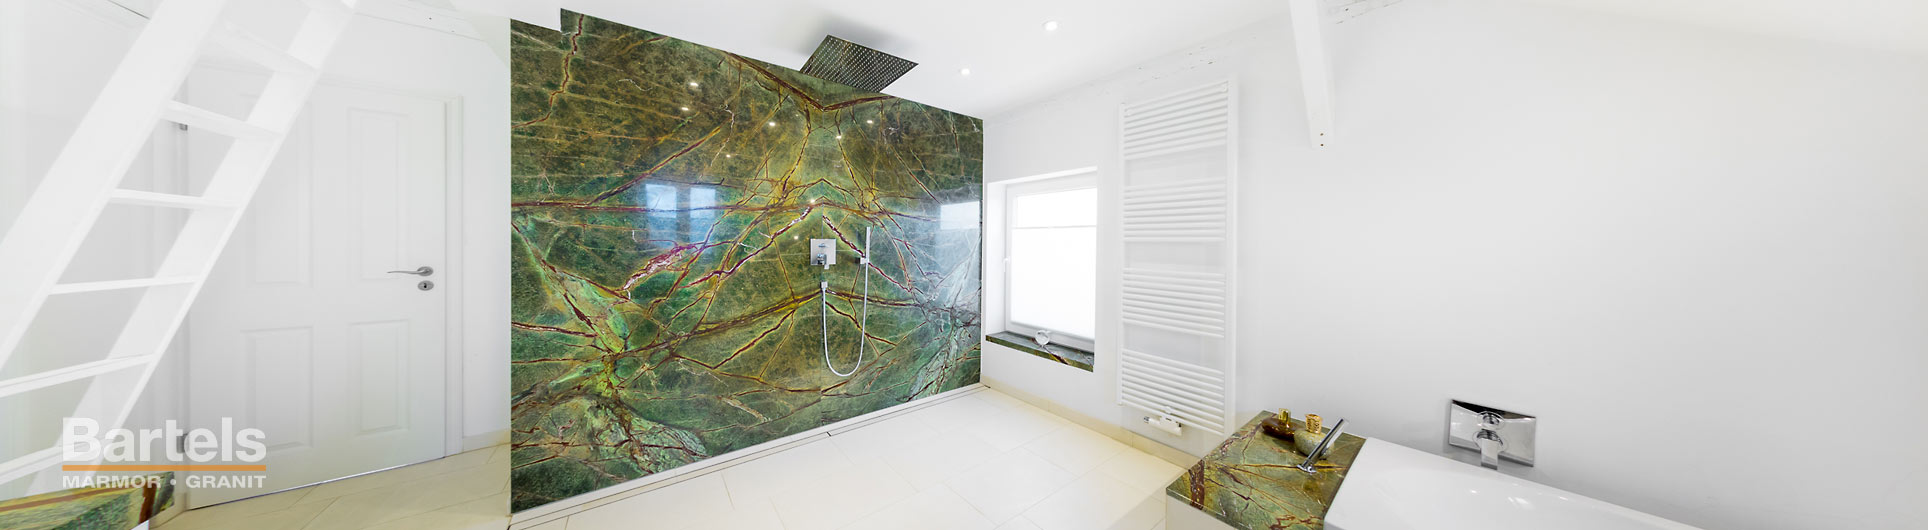 Neubau eines Badezimmers mit ebenerdiger Dusche in Pinneberg aus Naturstein Rain Forest Green.